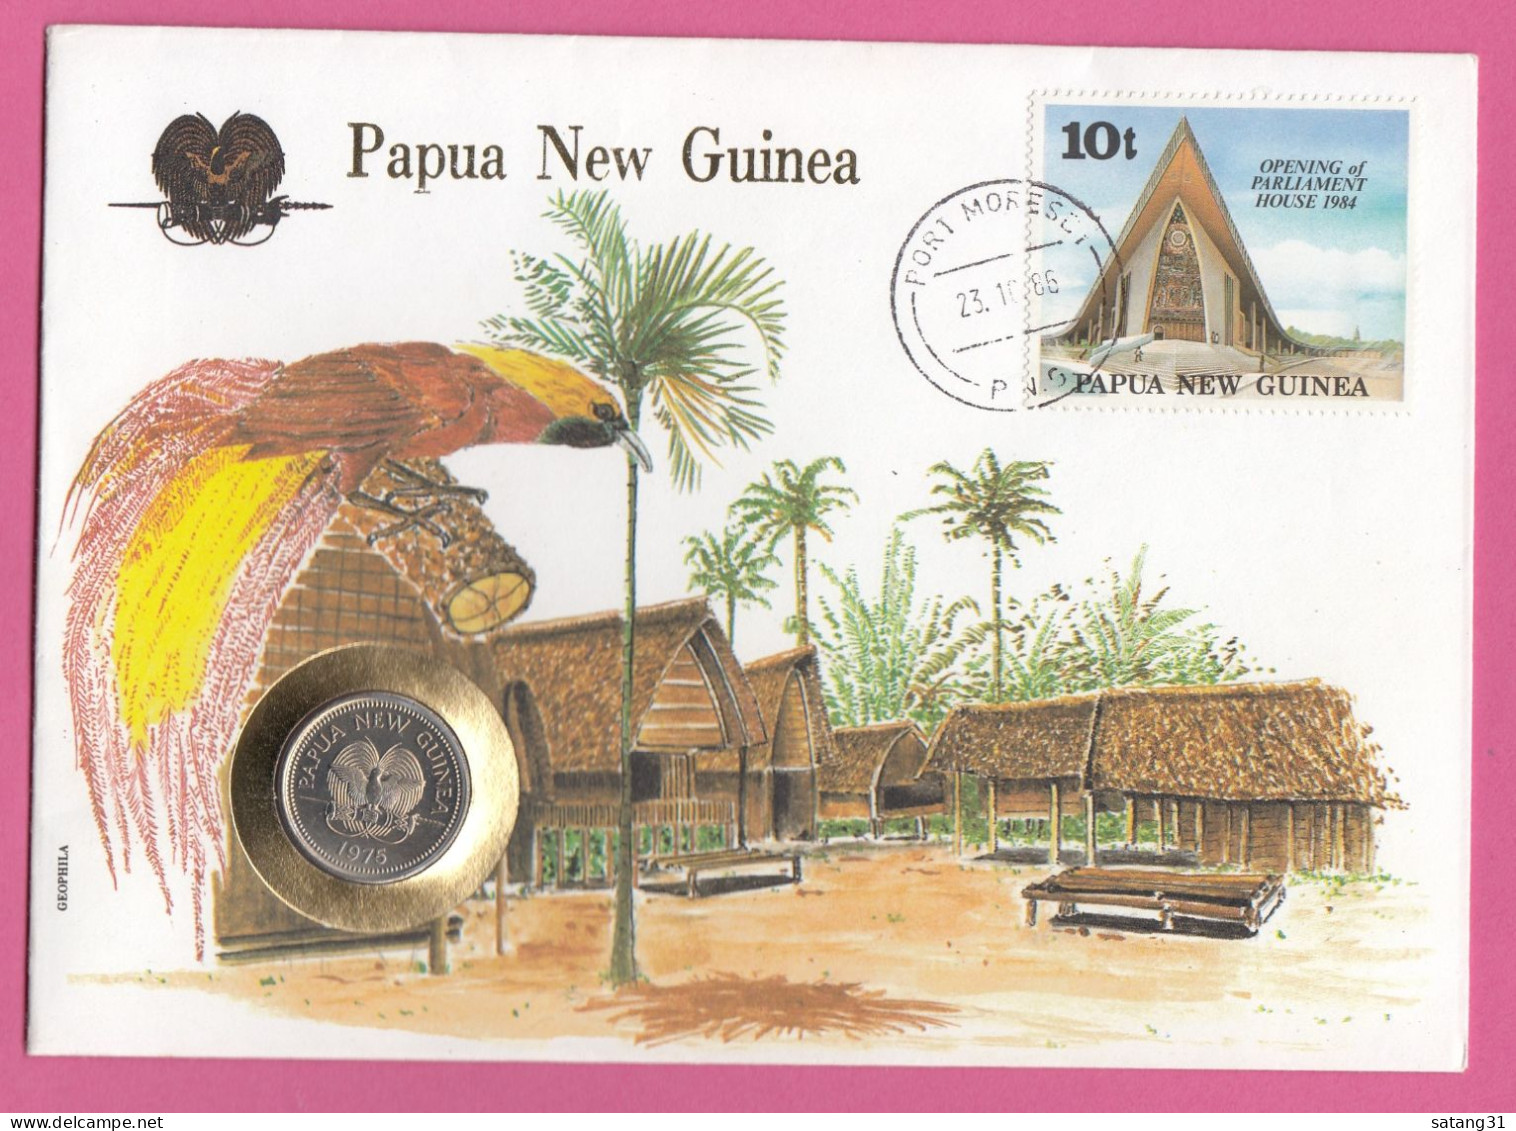 PAPOUASIE NOUVELLE GUINEE.ENVELOPPE AVEC TIMBRE ET MONNAIE,1986. - Monedas